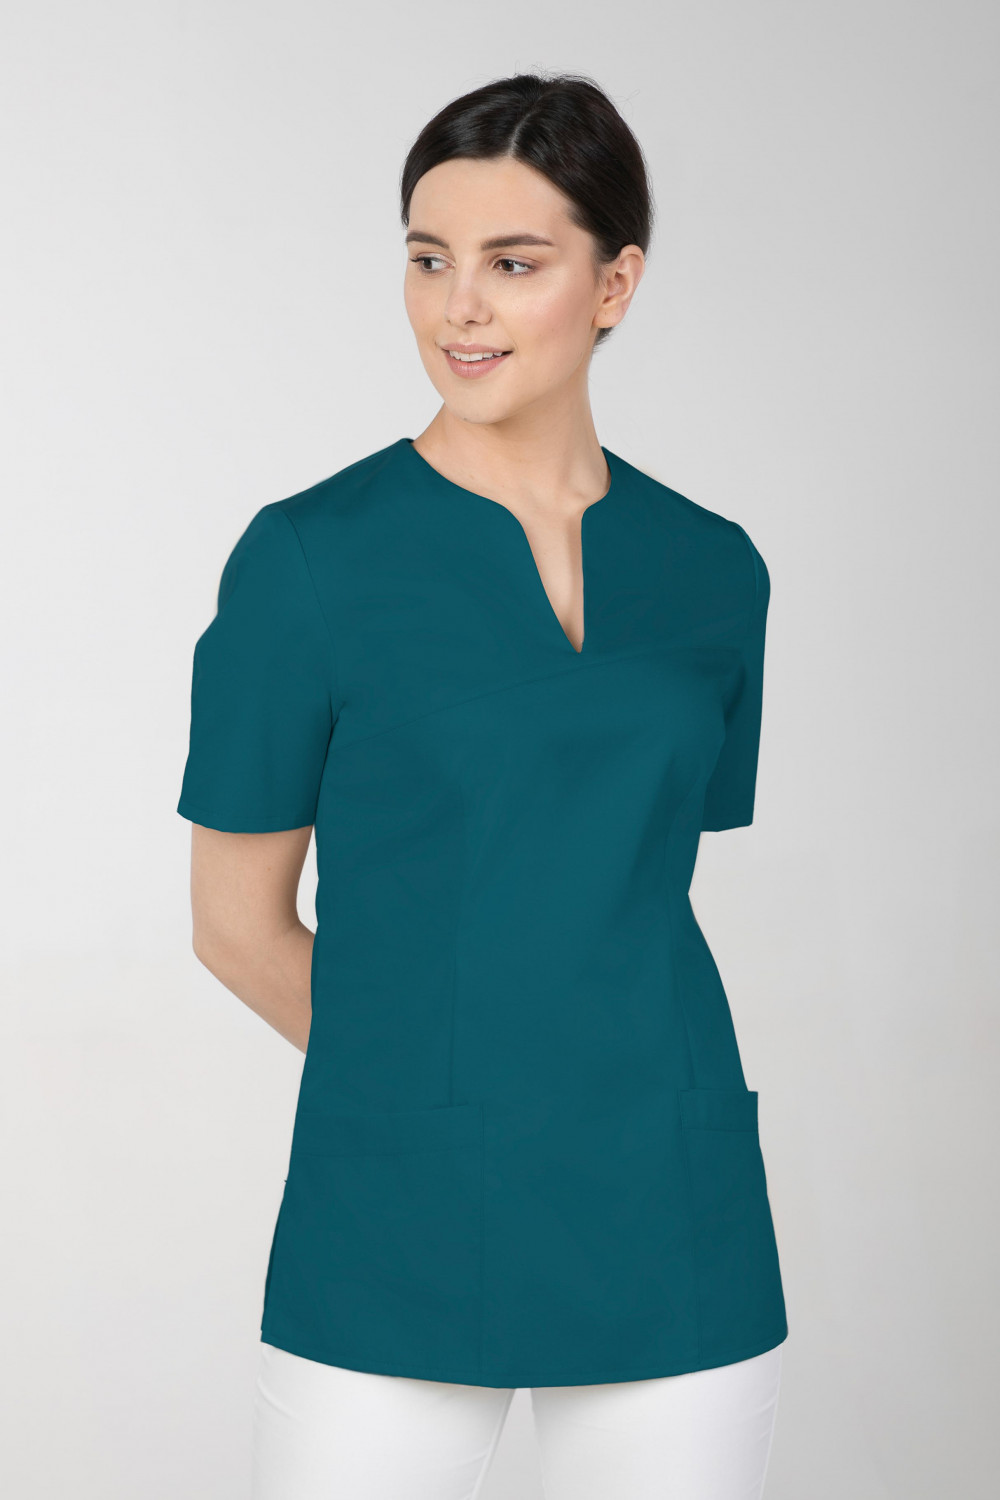 M-323X Bluza damska medyczna elastyczna kosmetyczna kolor ciemna zieleń